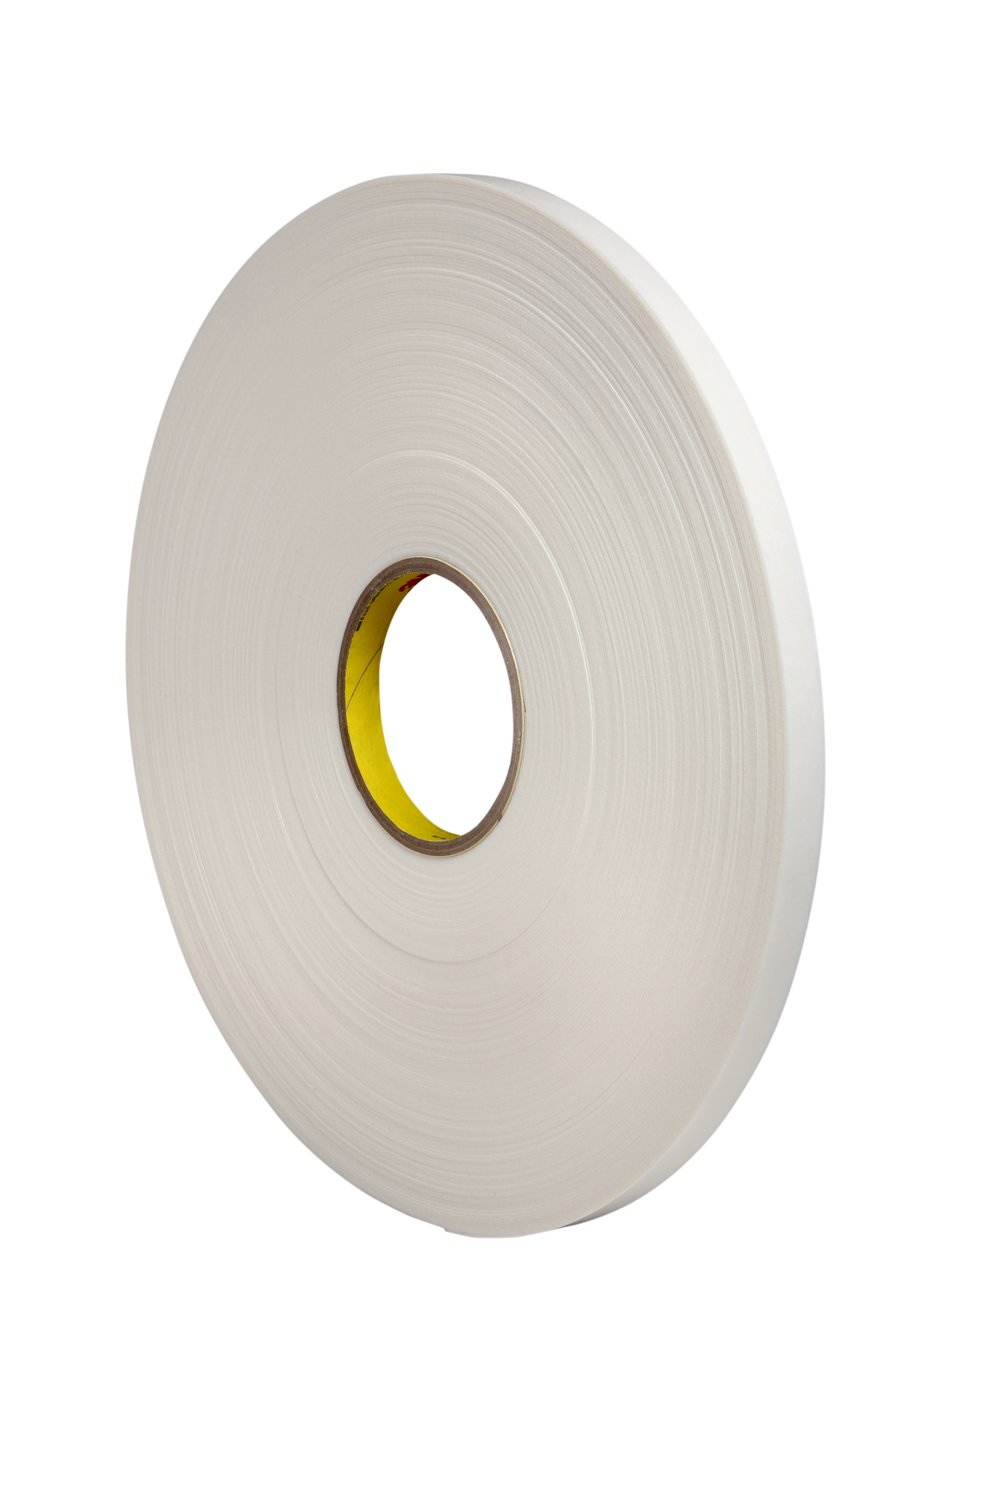 7010374043 - 3M Double Coated Polyethylene Foam Tape 4462, White, 1 1/2 in x 72 yd,
31 mil, 6 rolls per case